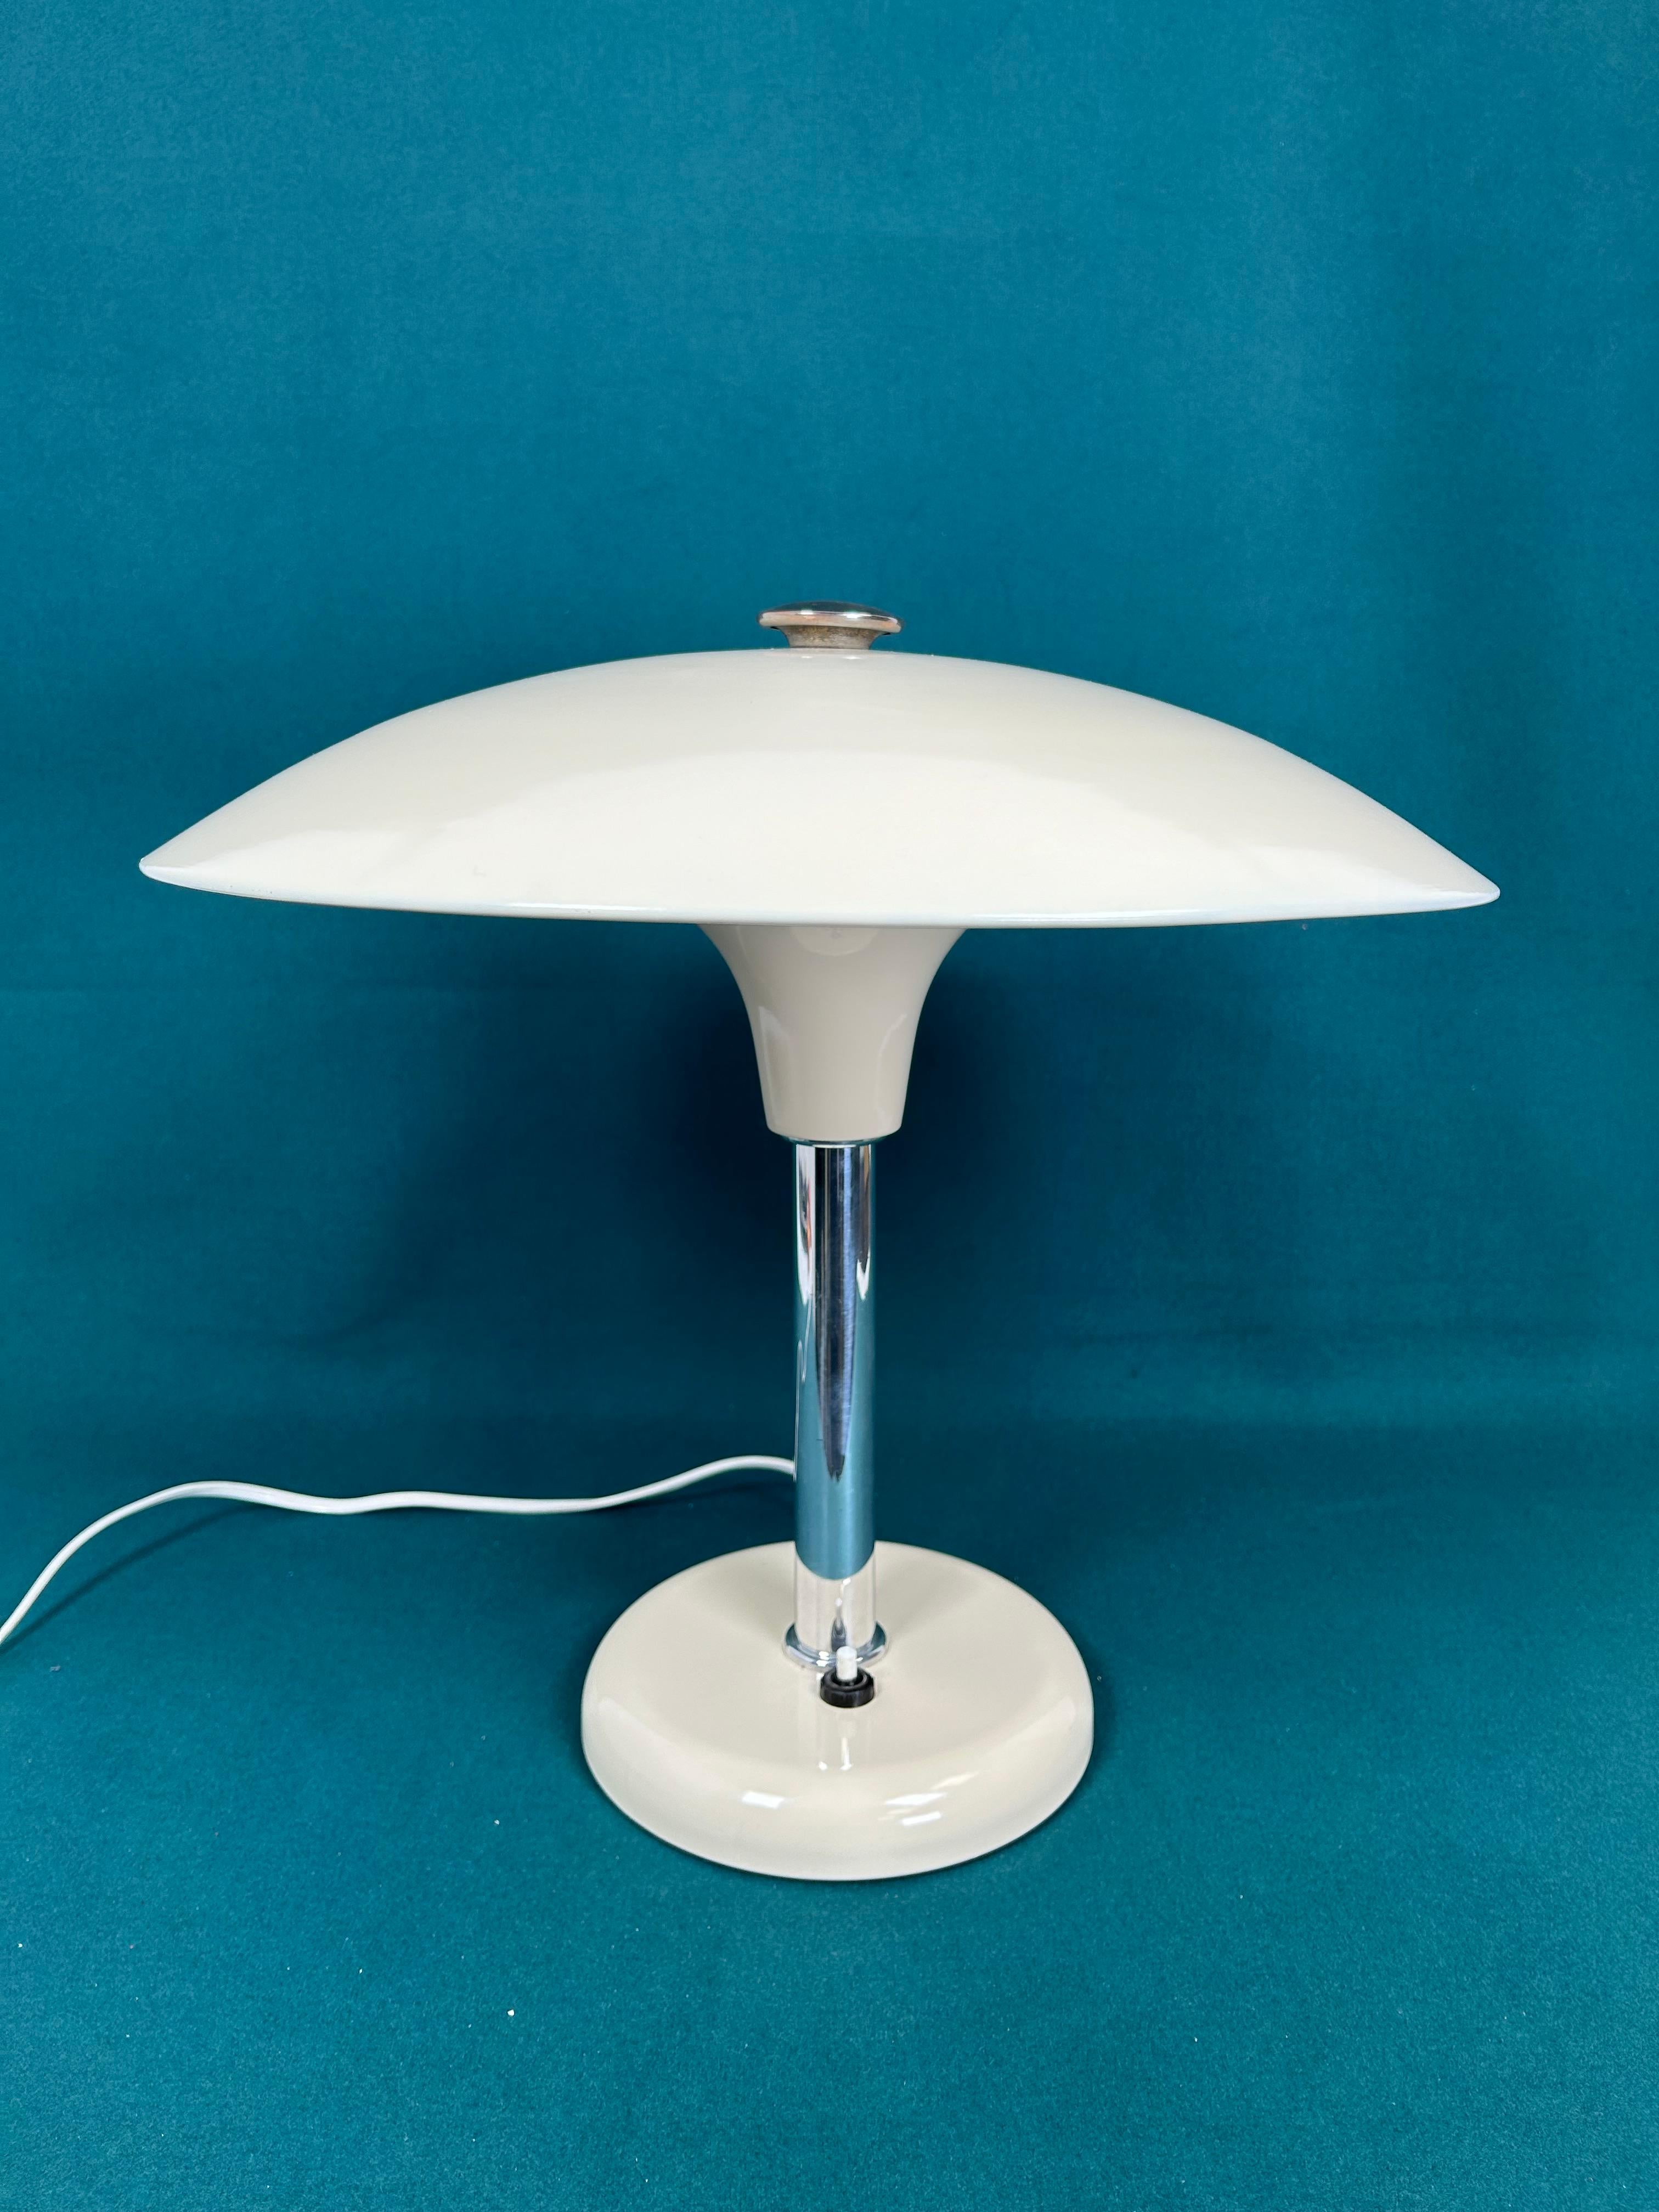 Art deco table lamp by Max Schumacher 1934 for Metallwerk Werner Schröder.